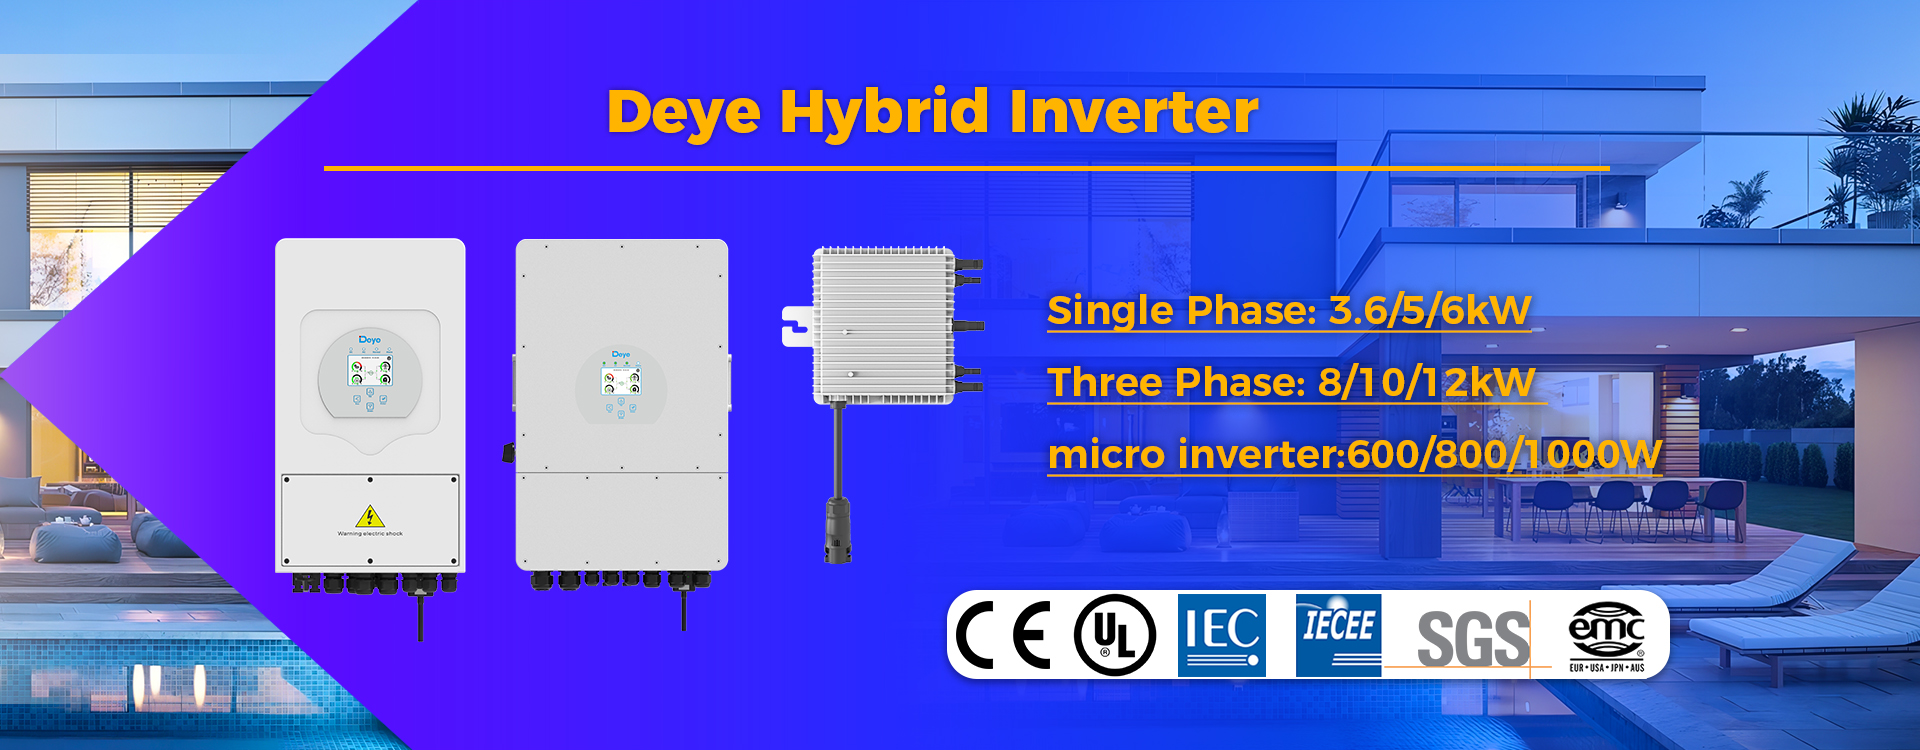 deye hybrid inverter microinverter